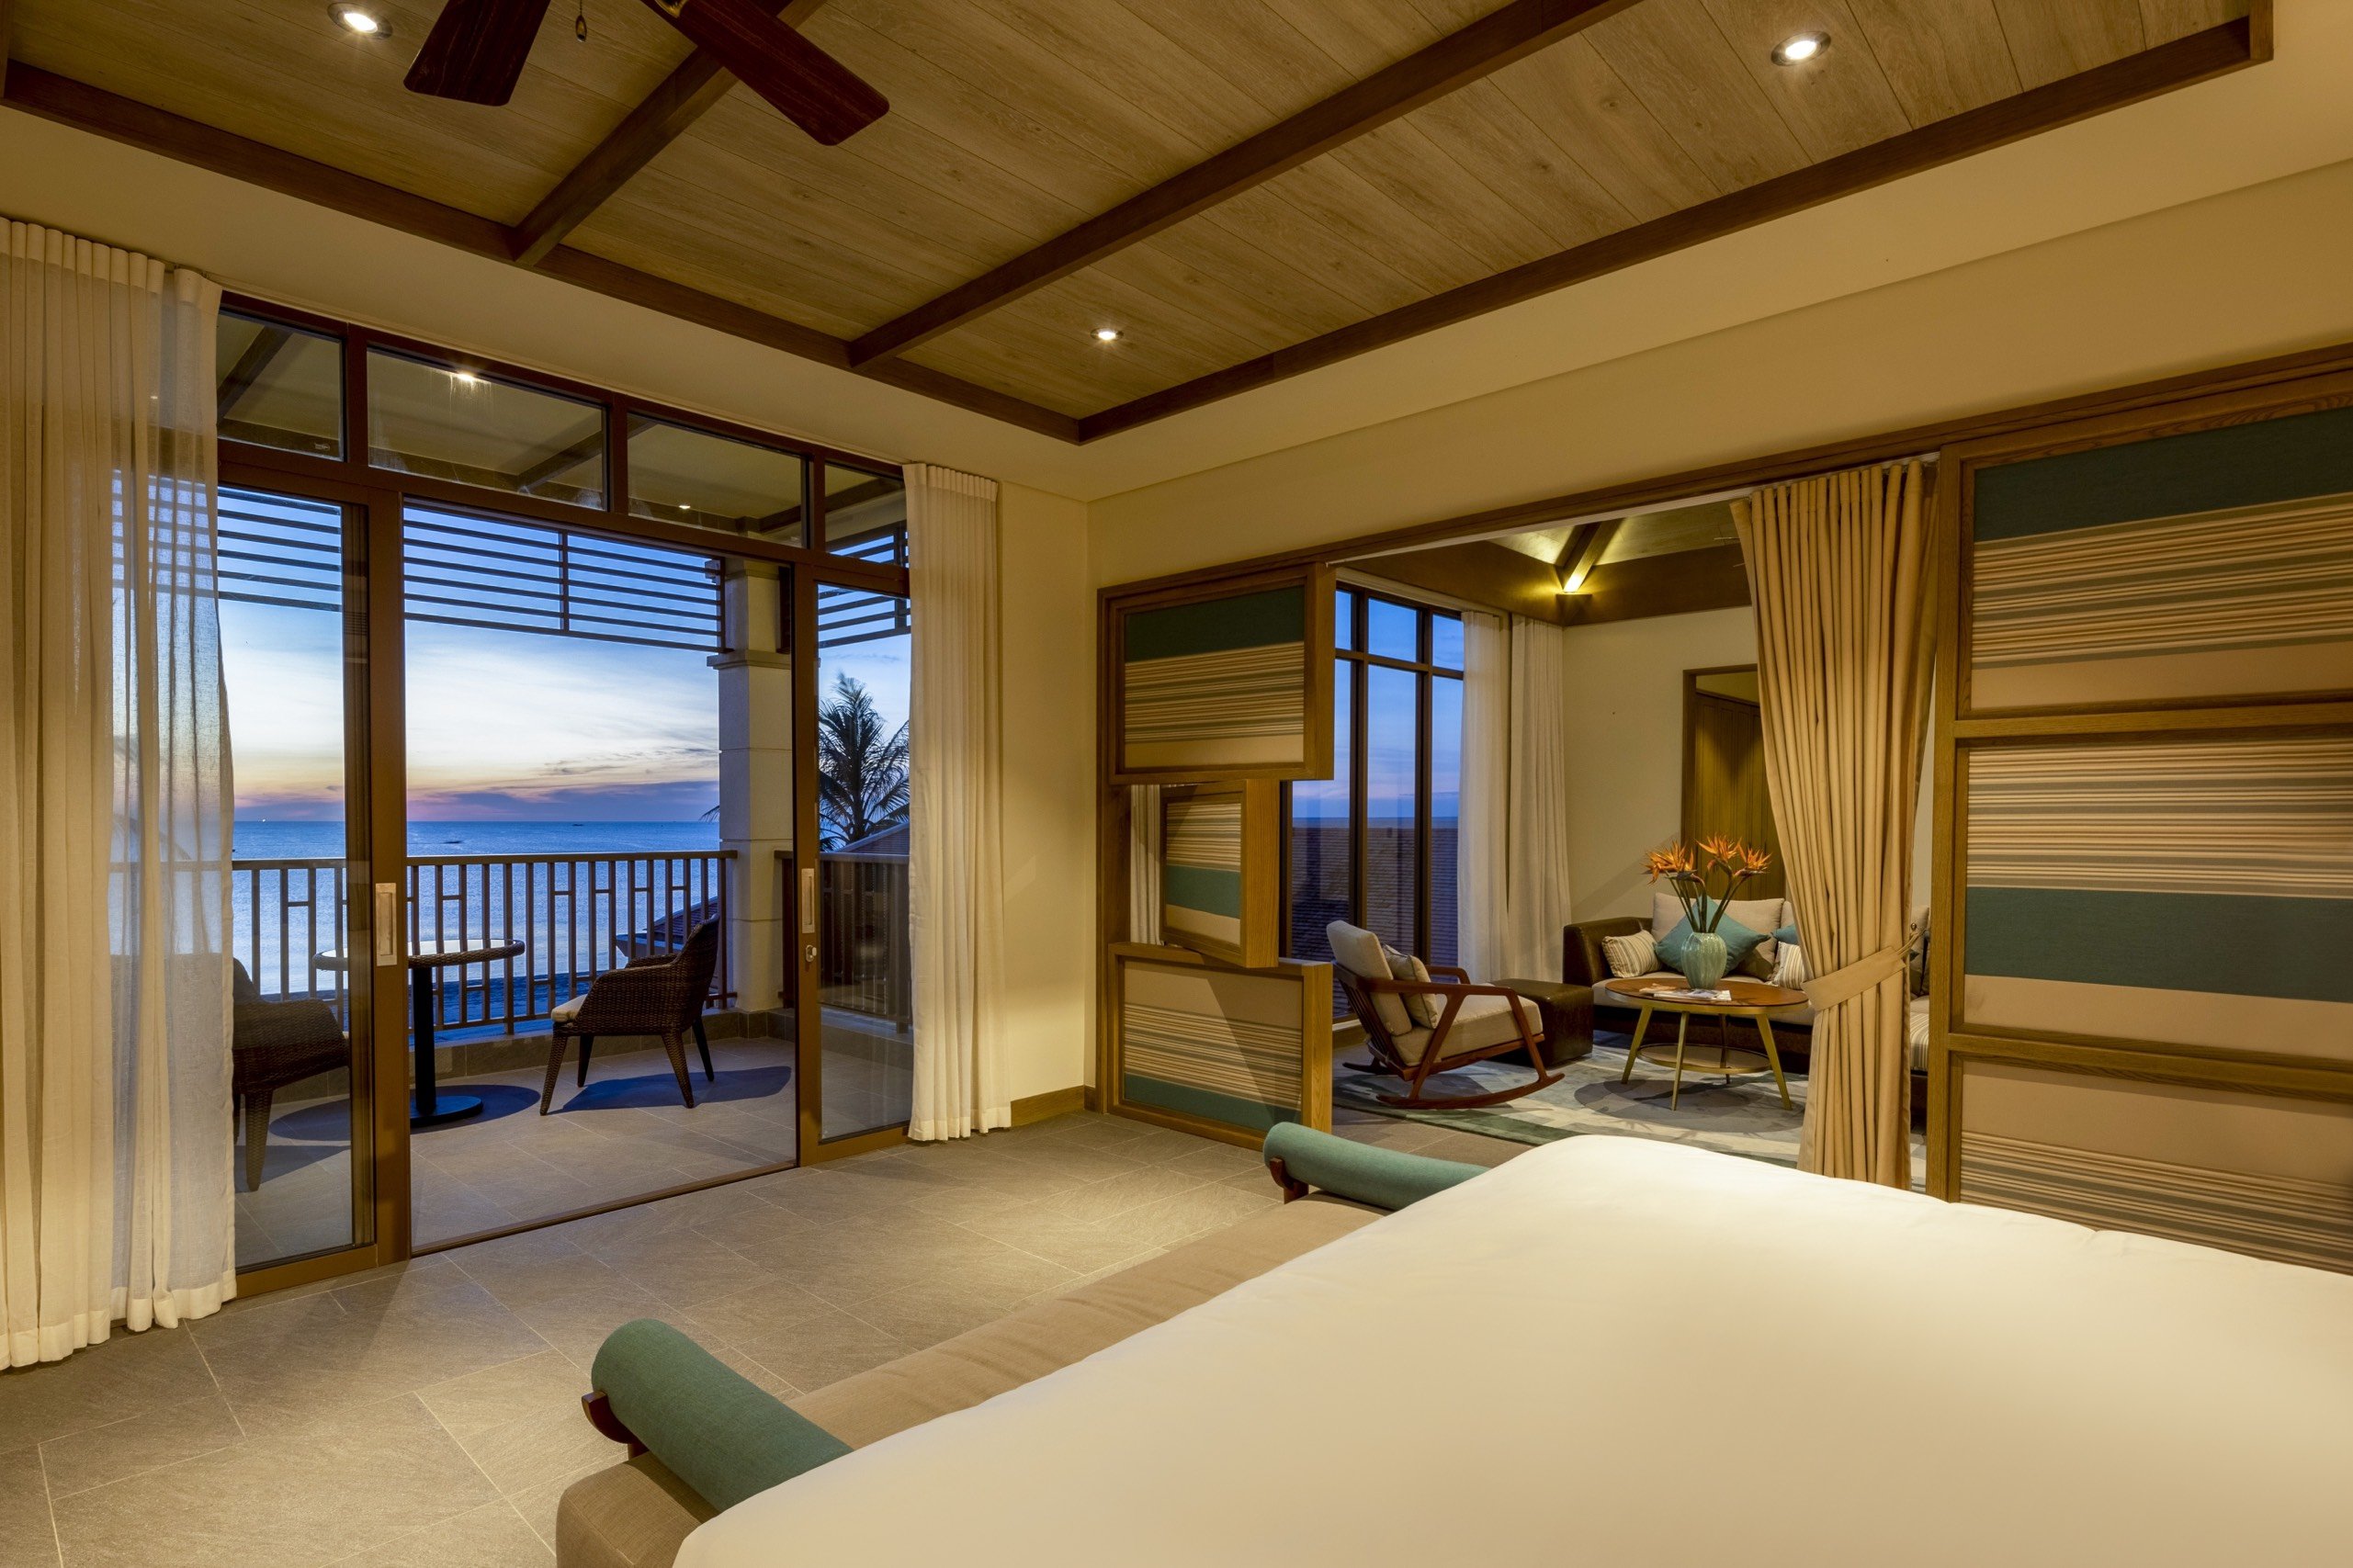 Chỉ 32 tỷ sở hữu ngay căn biệt thự biển 2 phòng ngủ tại bãi biển đẹp nhất dự án Fusion Resort & Villas Đà Nẵng - Lh Hương 0903407925 4